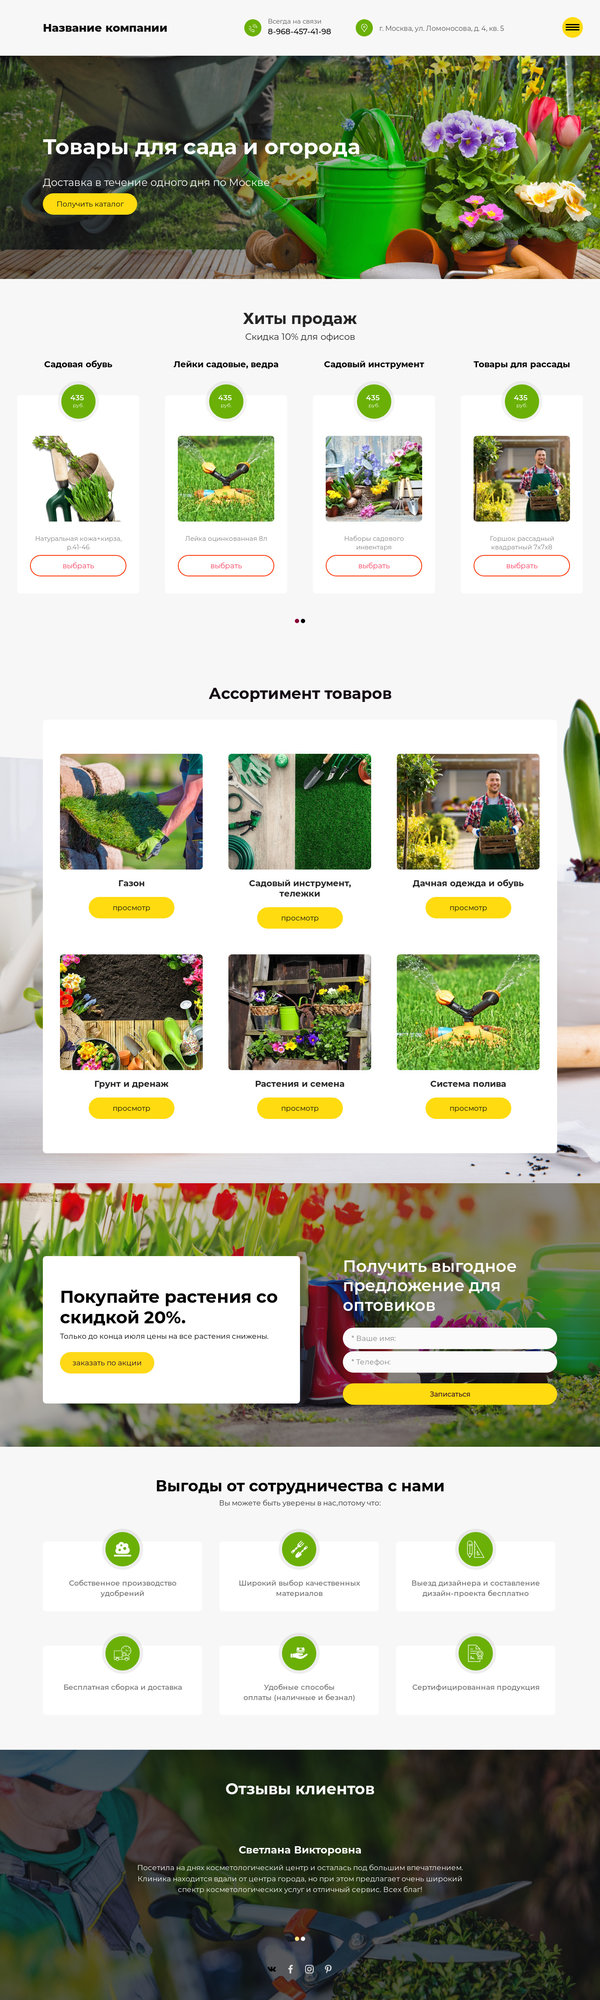 Готовый Сайт-Бизнес № 2271436 - Товары для сада и огорода (Десктопная версия)